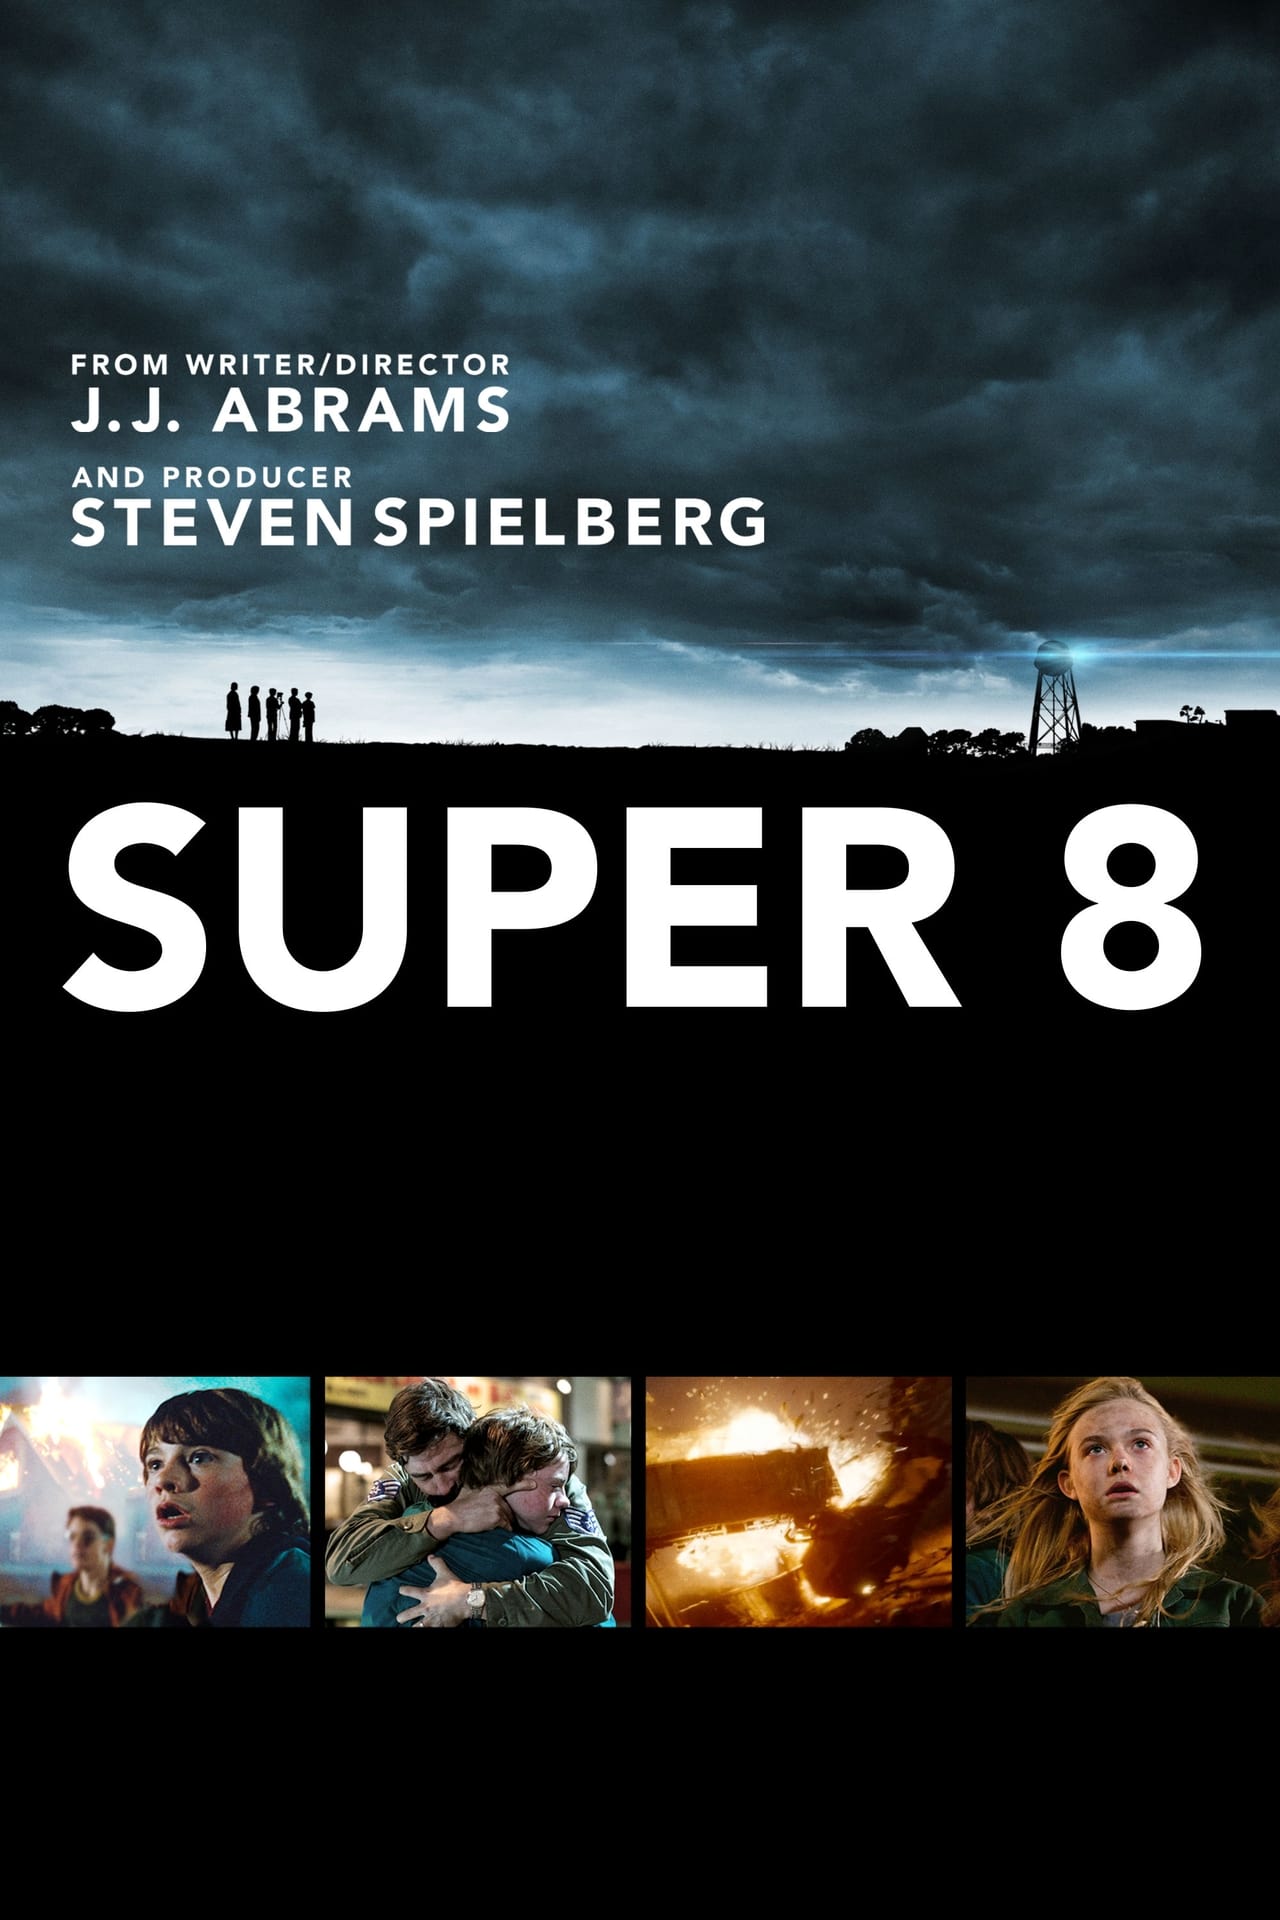 super 8 movie reviews